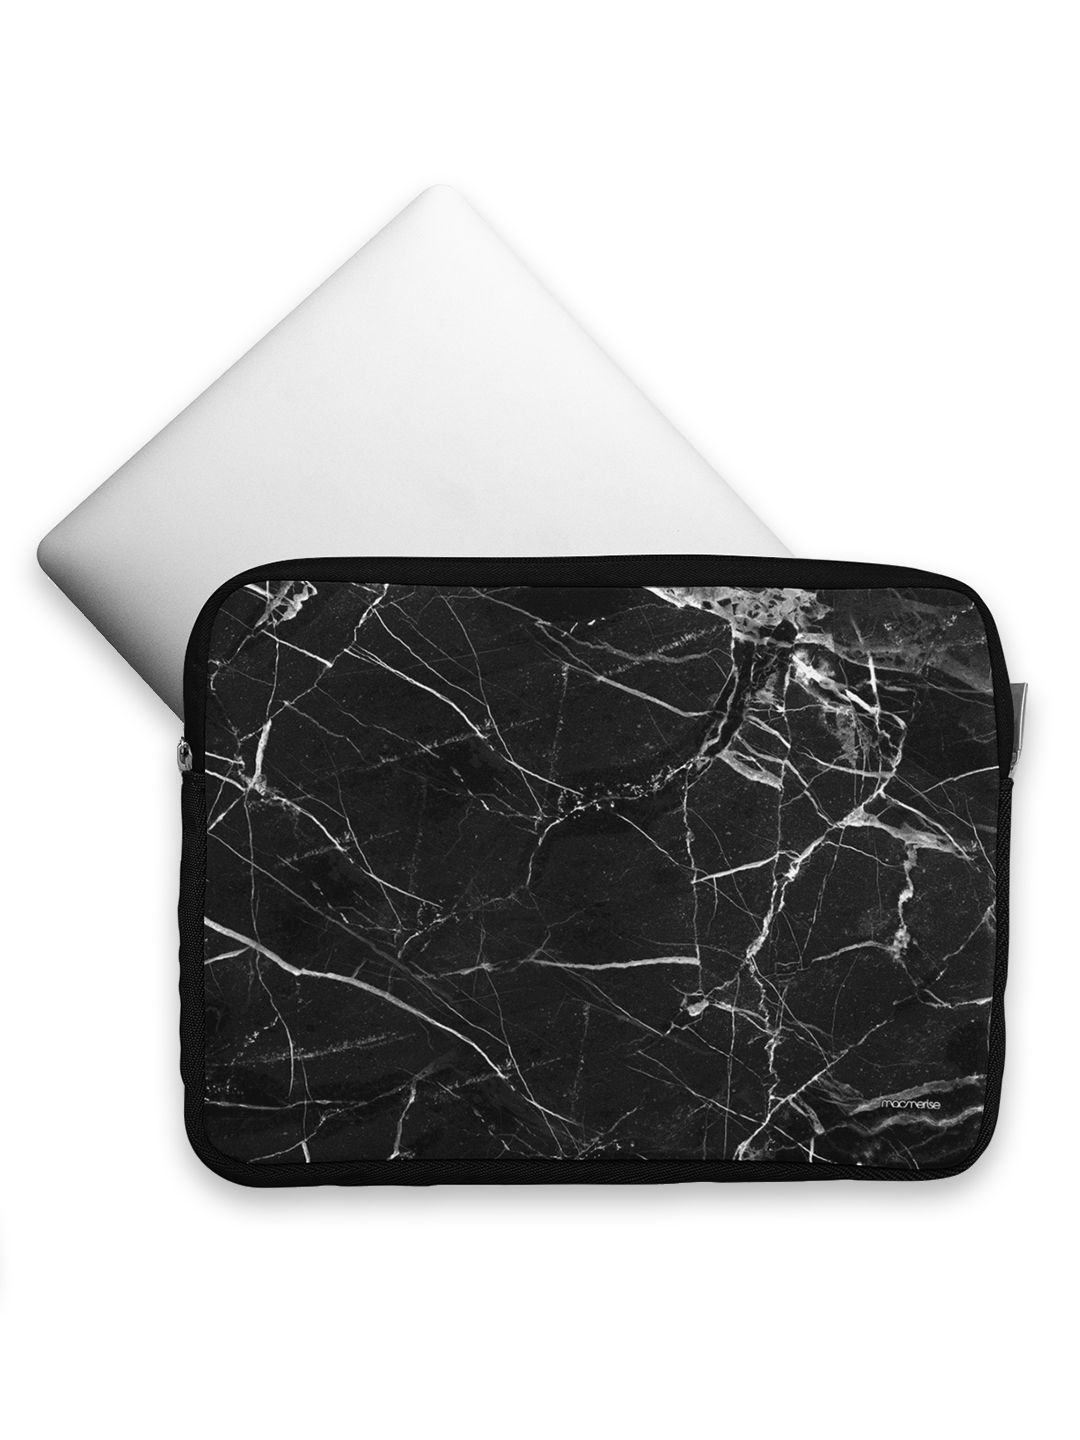 Marble Noir Belge - Printed Laptop Sleeves (13 inch)